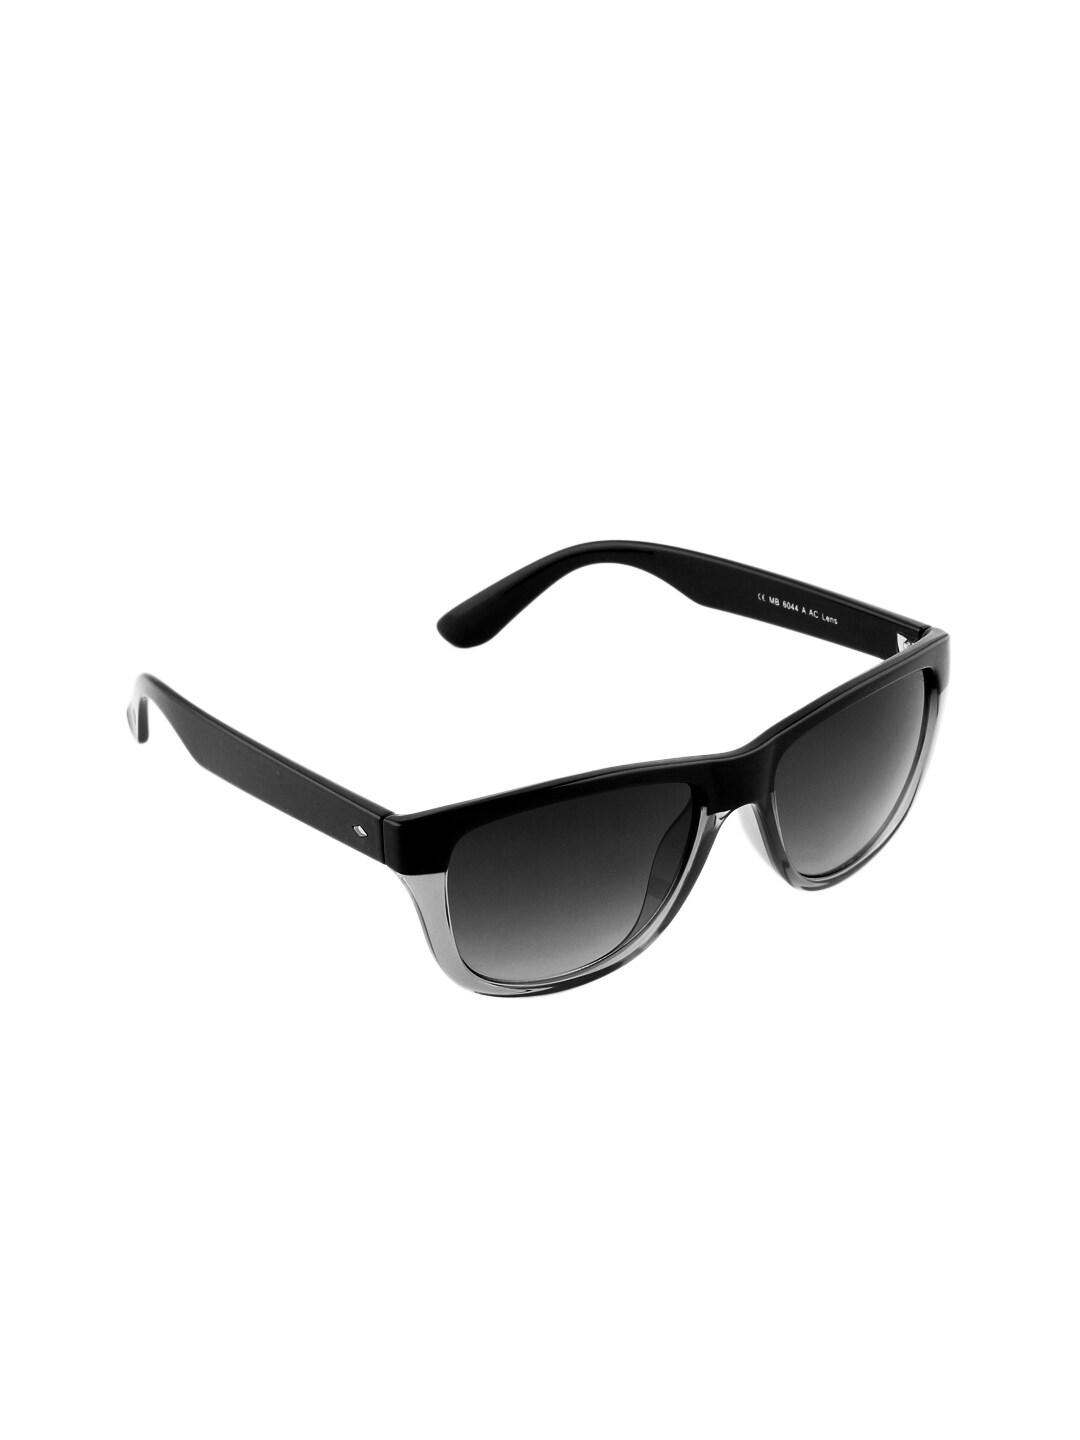 Miami Blues Unisex Sunglasses